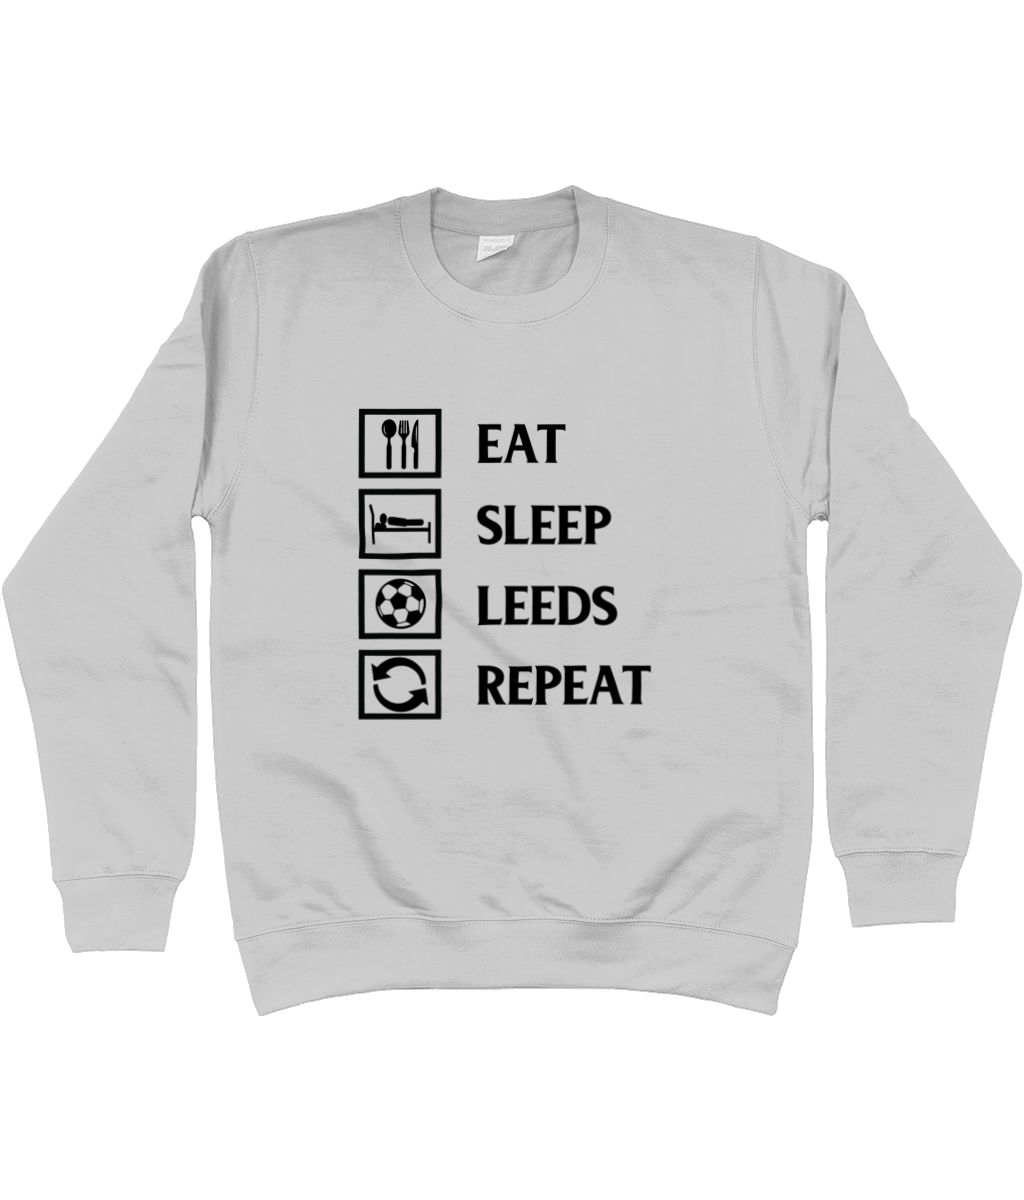 Eat, Sleep, Leeds, Repeat Jumper Men